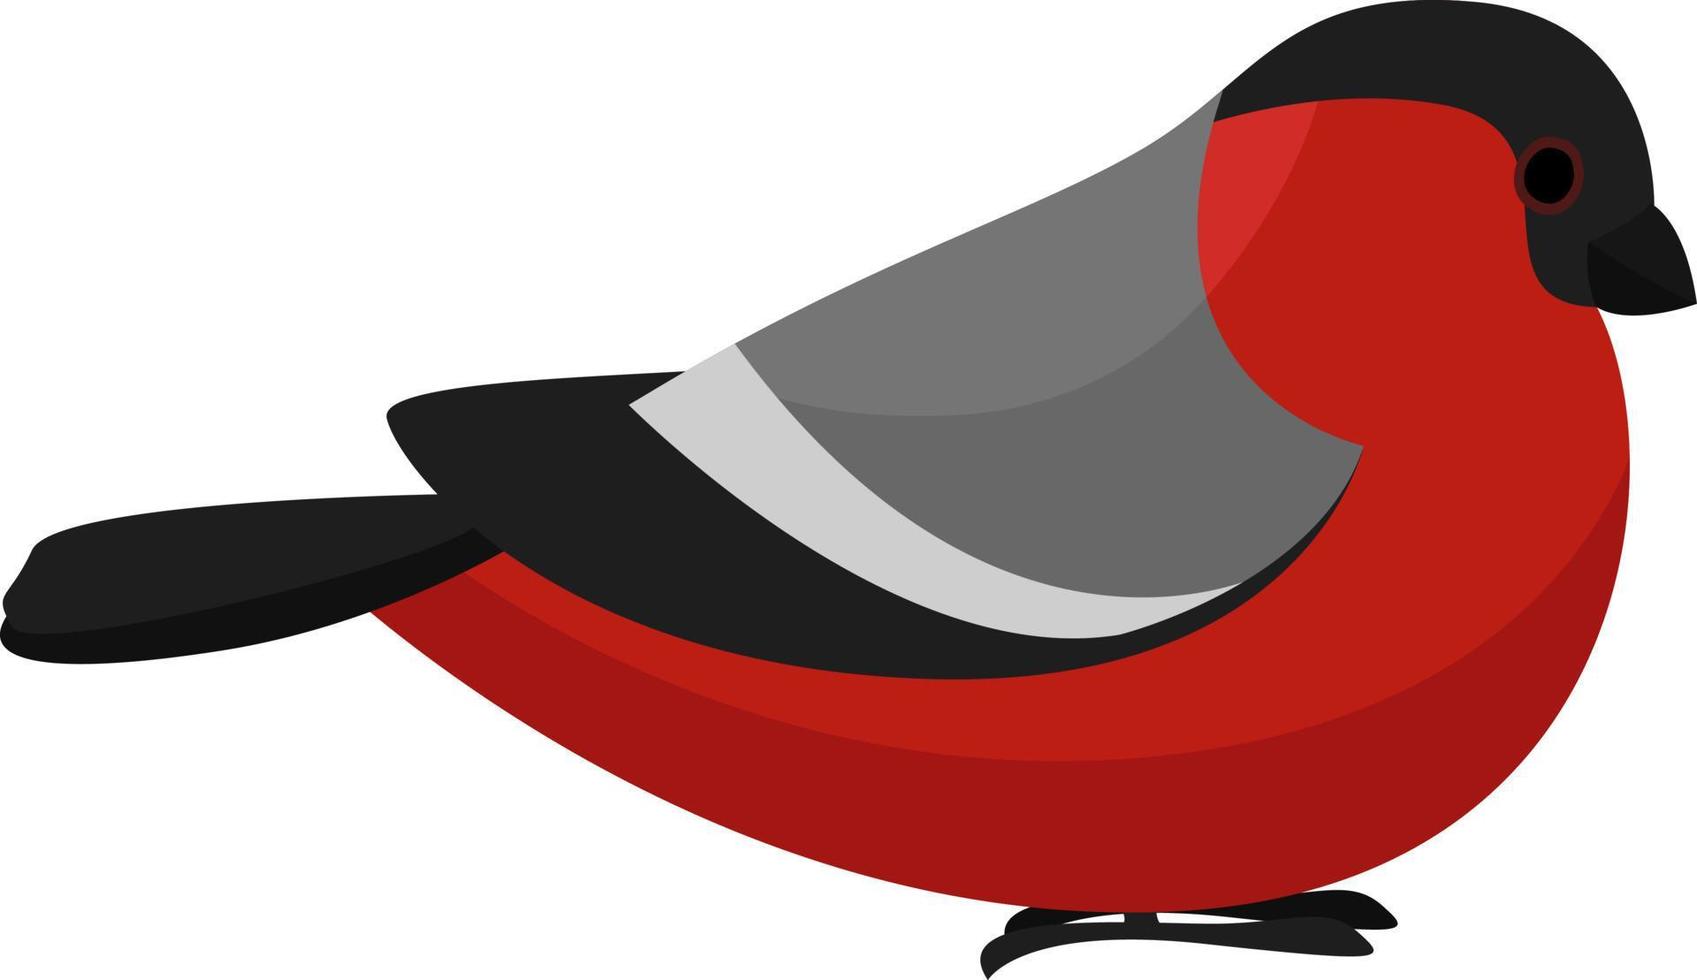 Pequeño pájaro rojo, ilustración, vector sobre fondo blanco.